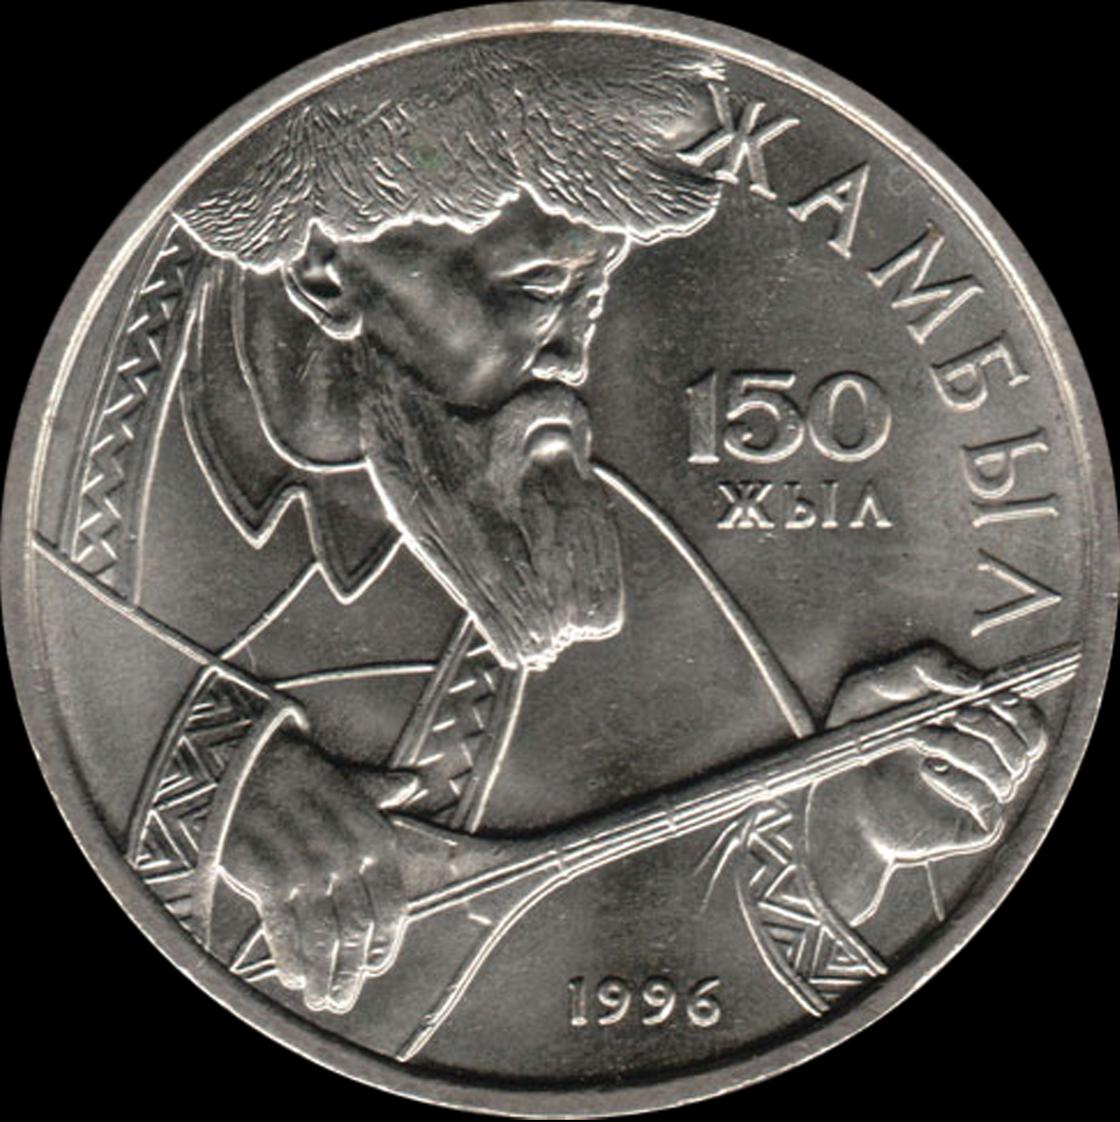 Памятная монета Казахстана, посвященная 150-летию со дня рождения Жабаева